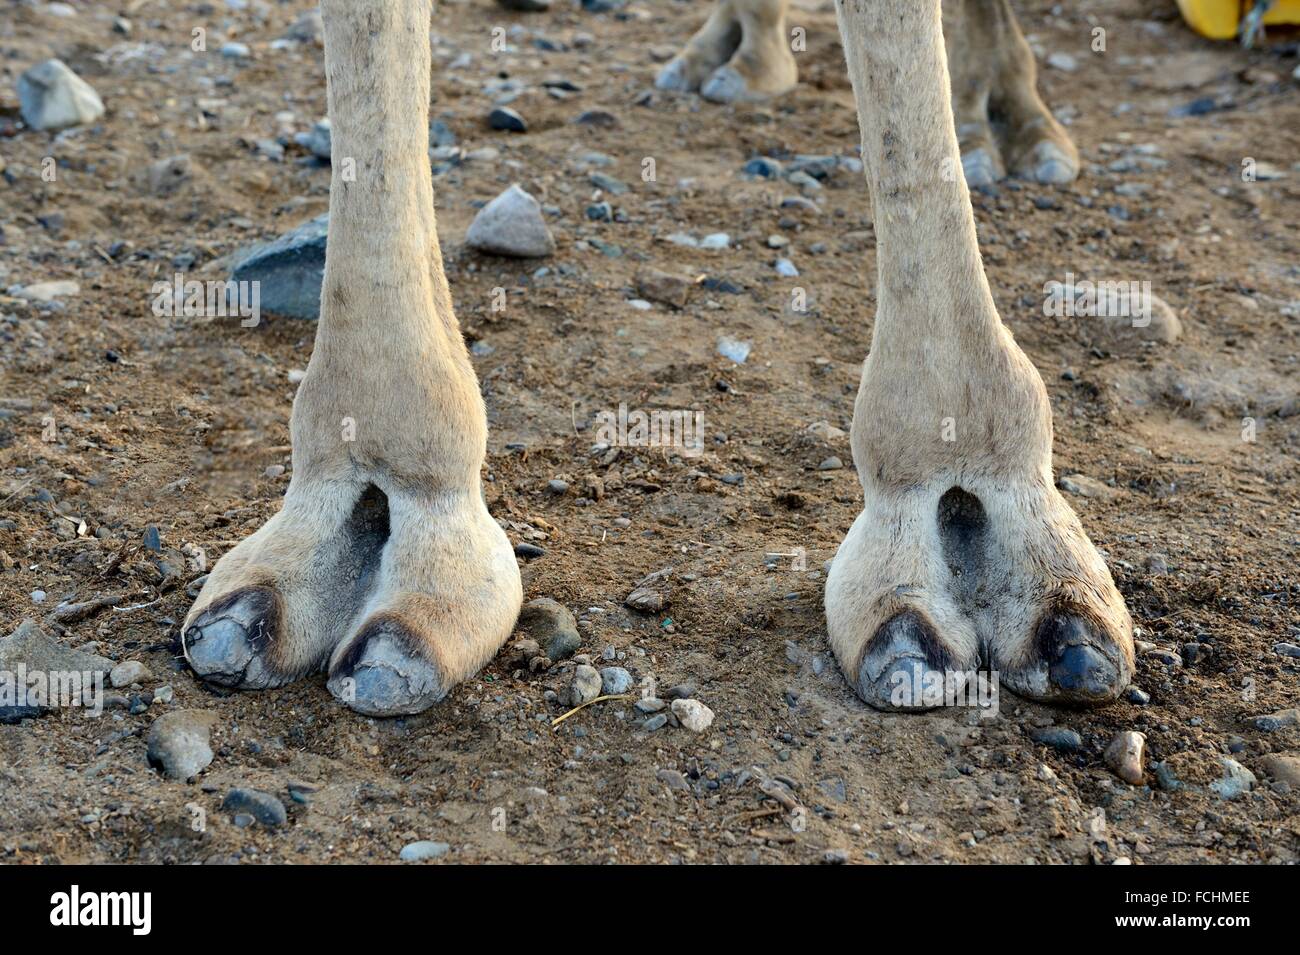 Zoccolo cammello immagini e fotografie stock ad alta risoluzione - Alamy